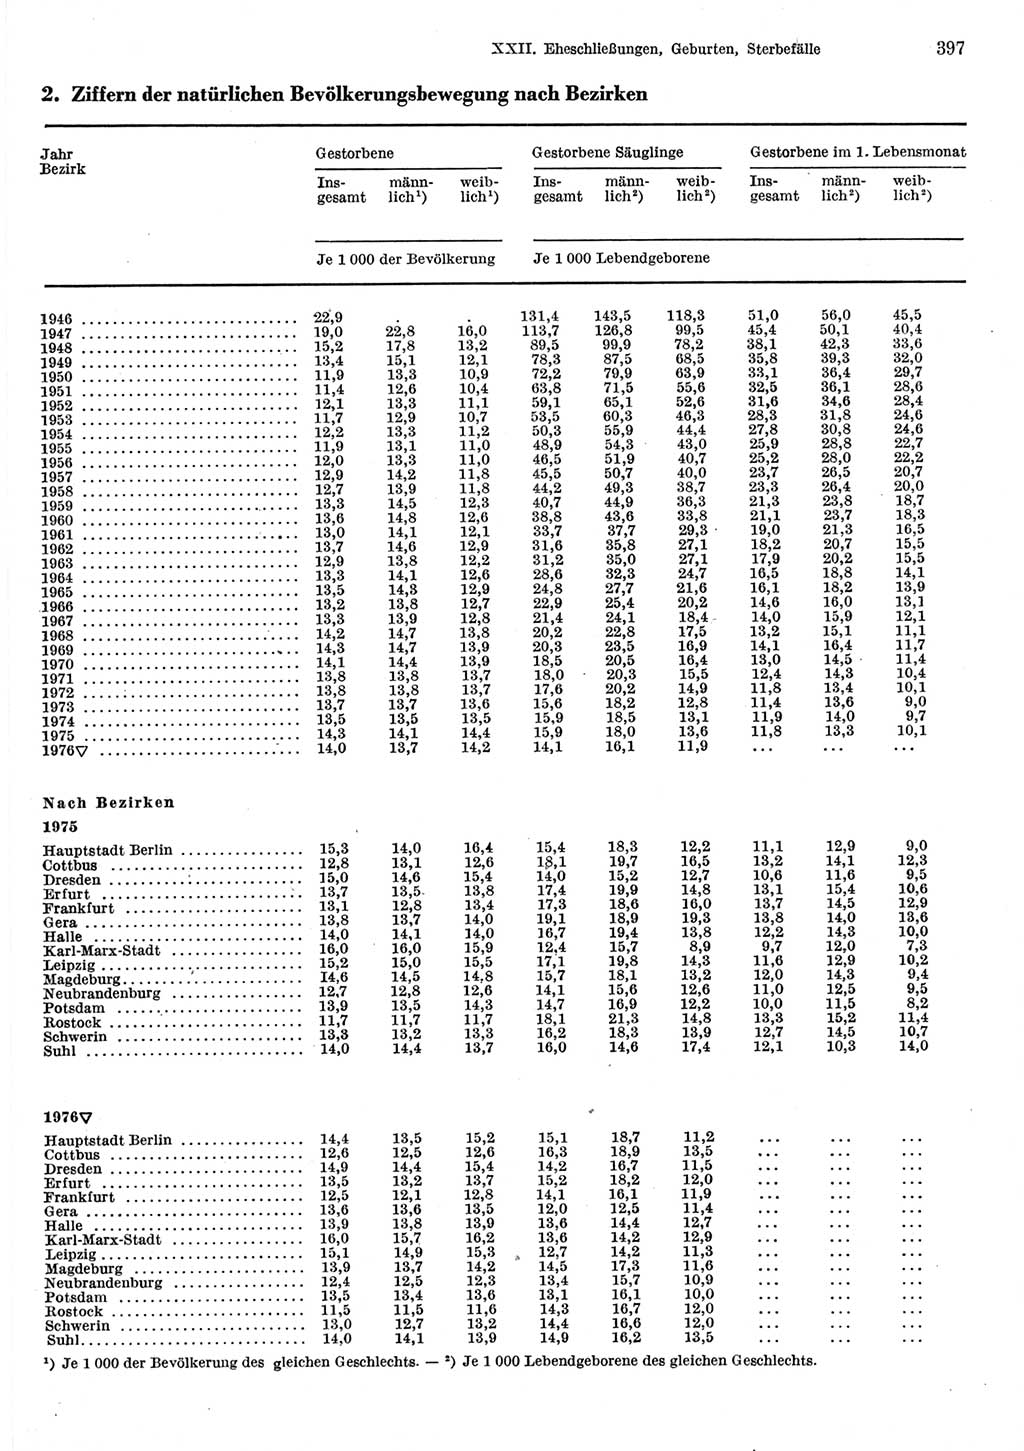 Statistisches Jahrbuch der Deutschen Demokratischen Republik (DDR) 1977, Seite 397 (Stat. Jb. DDR 1977, S. 397)